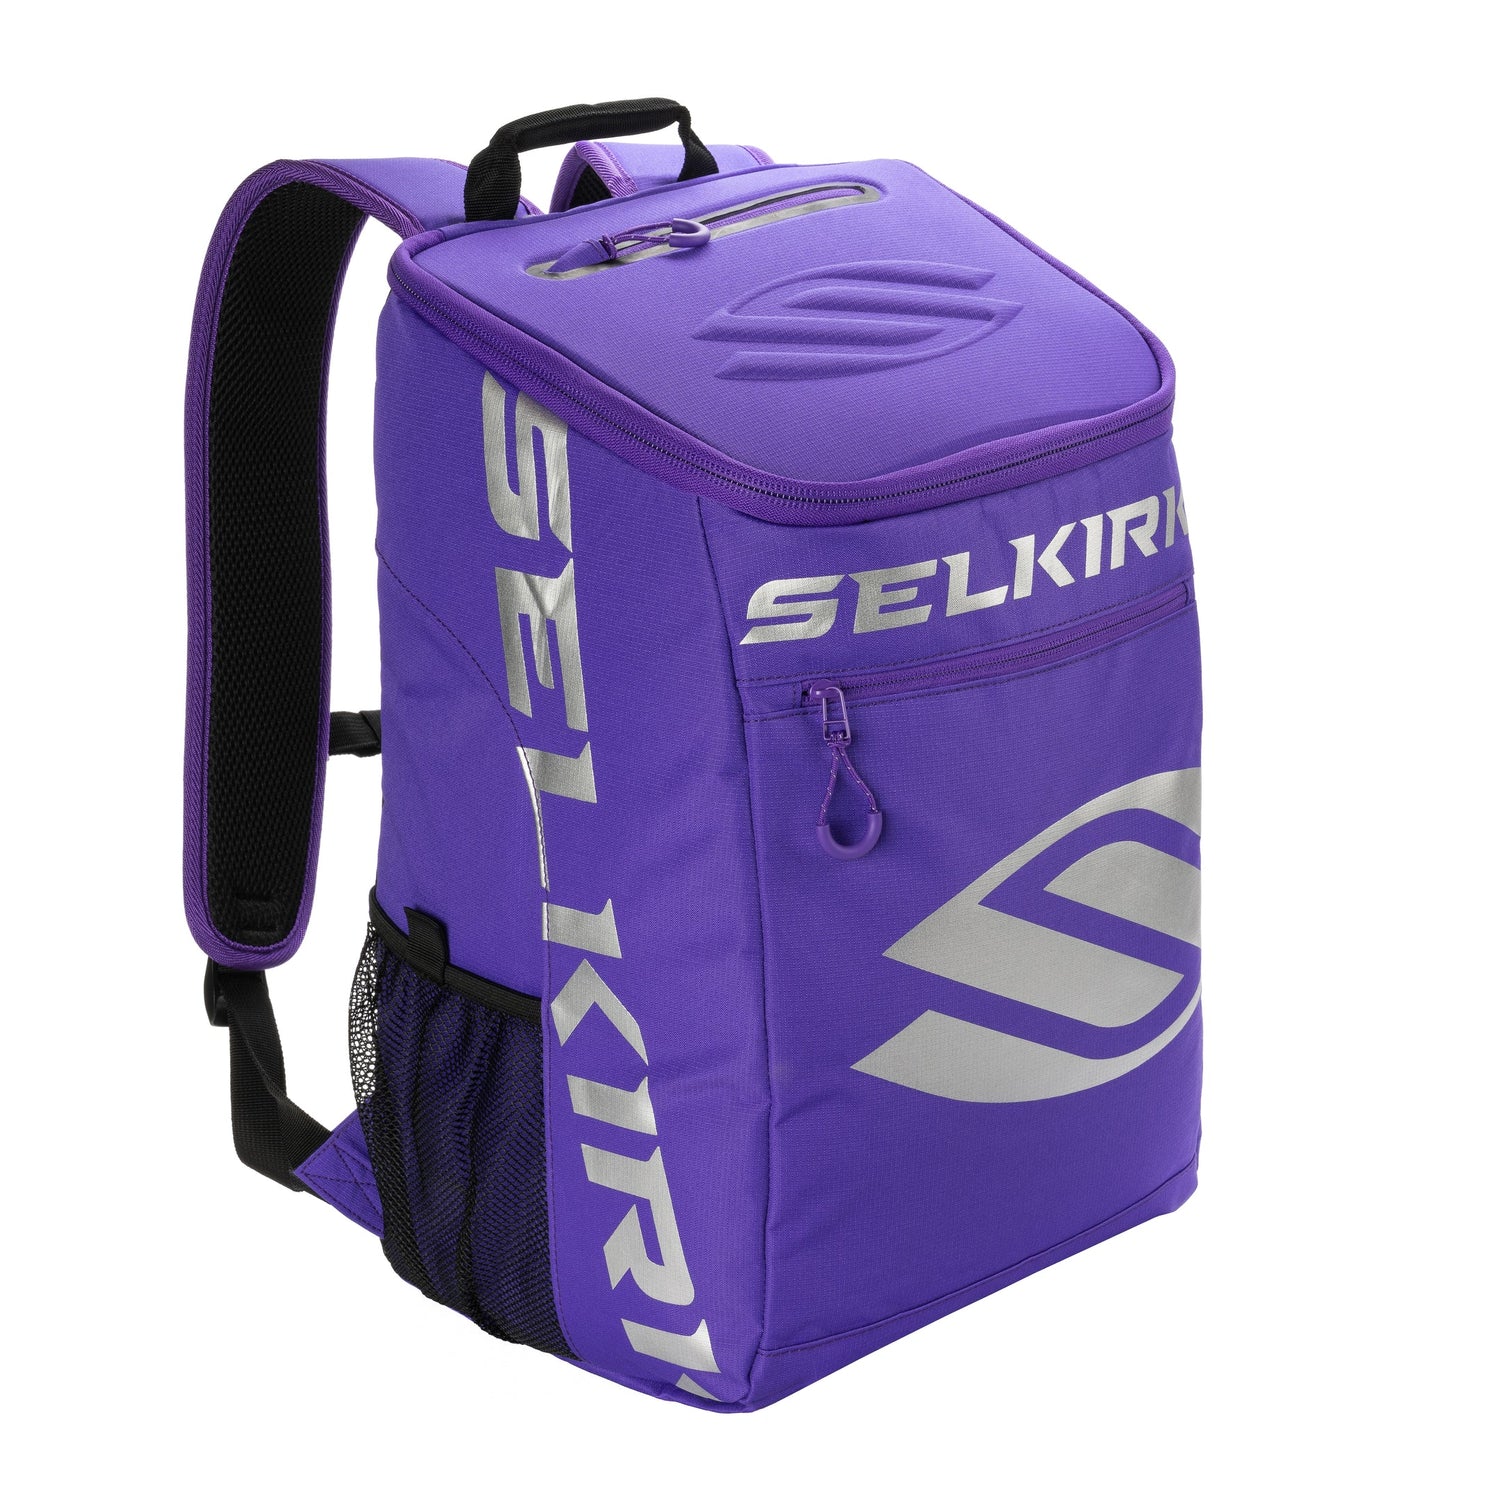 Selkirk Core Team Pickleball Backpack purple